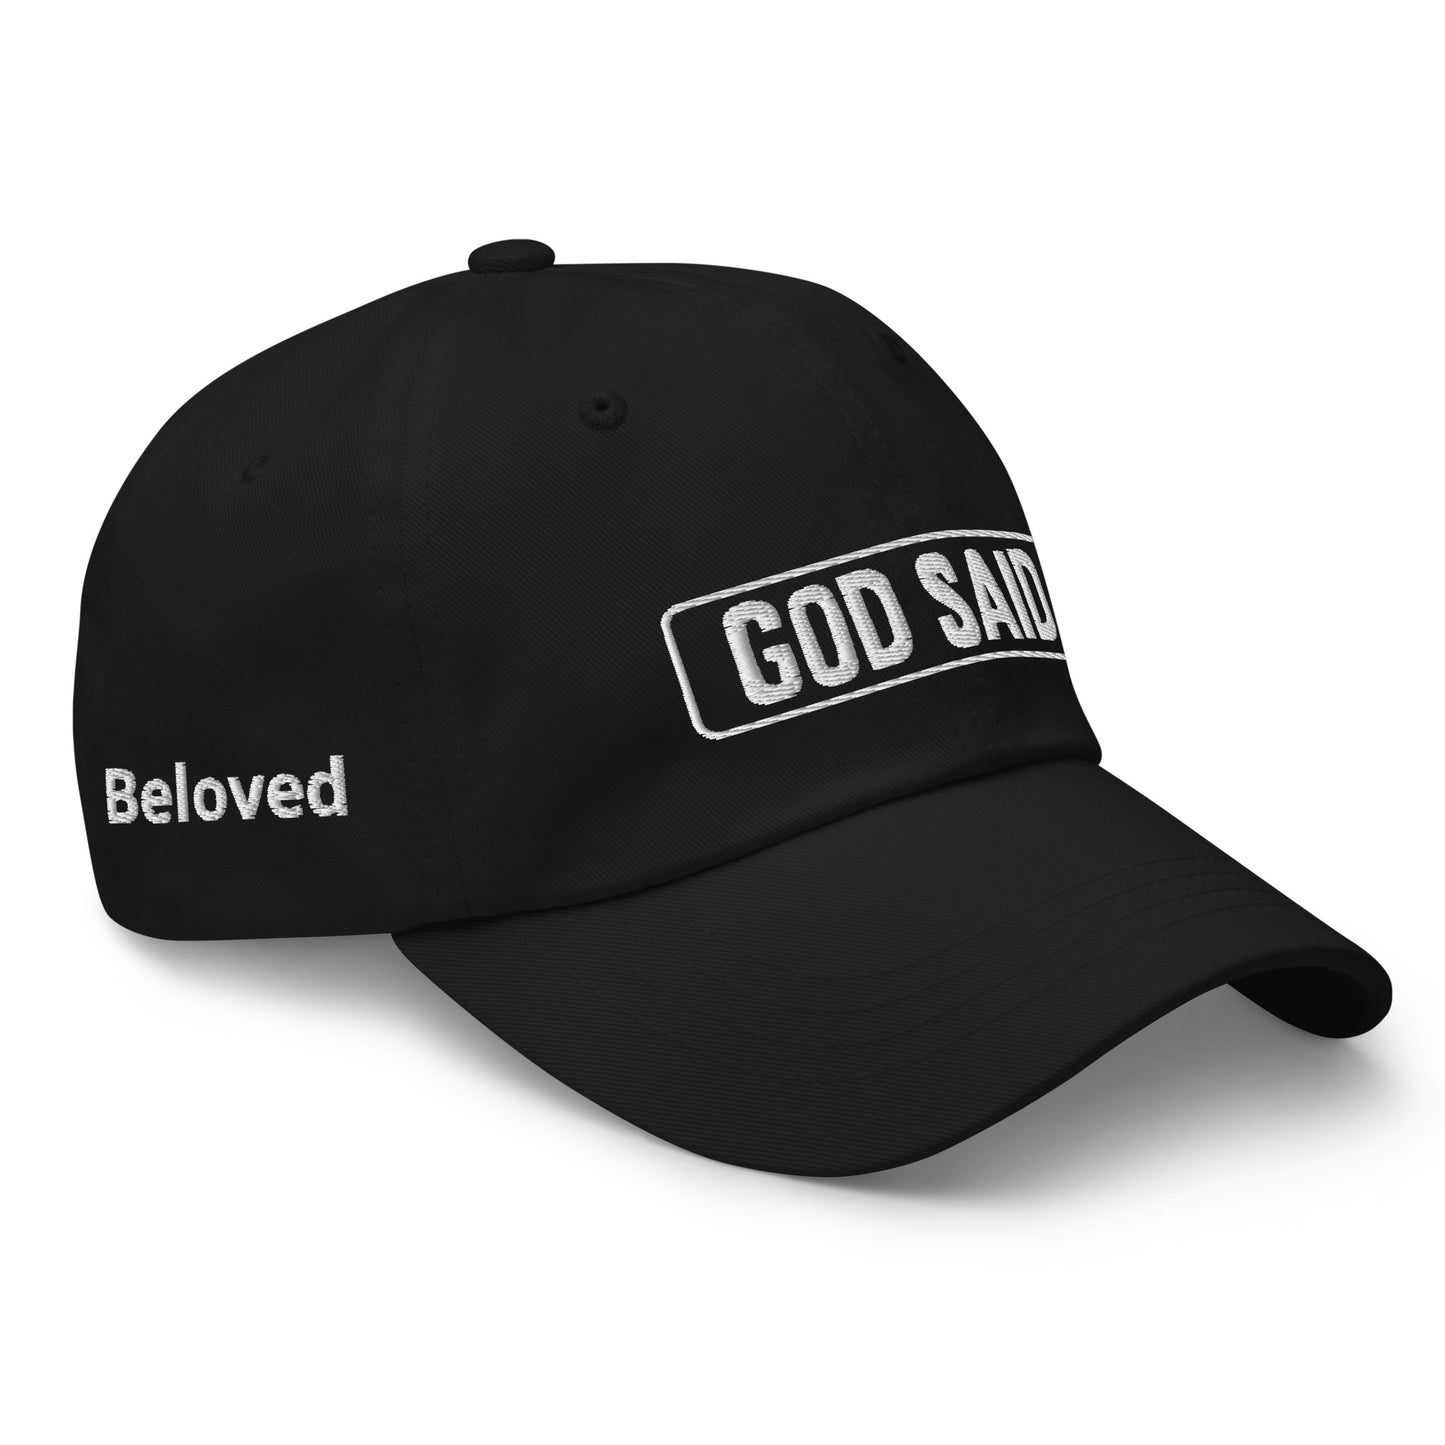 God Said "Beloved" Dad hat